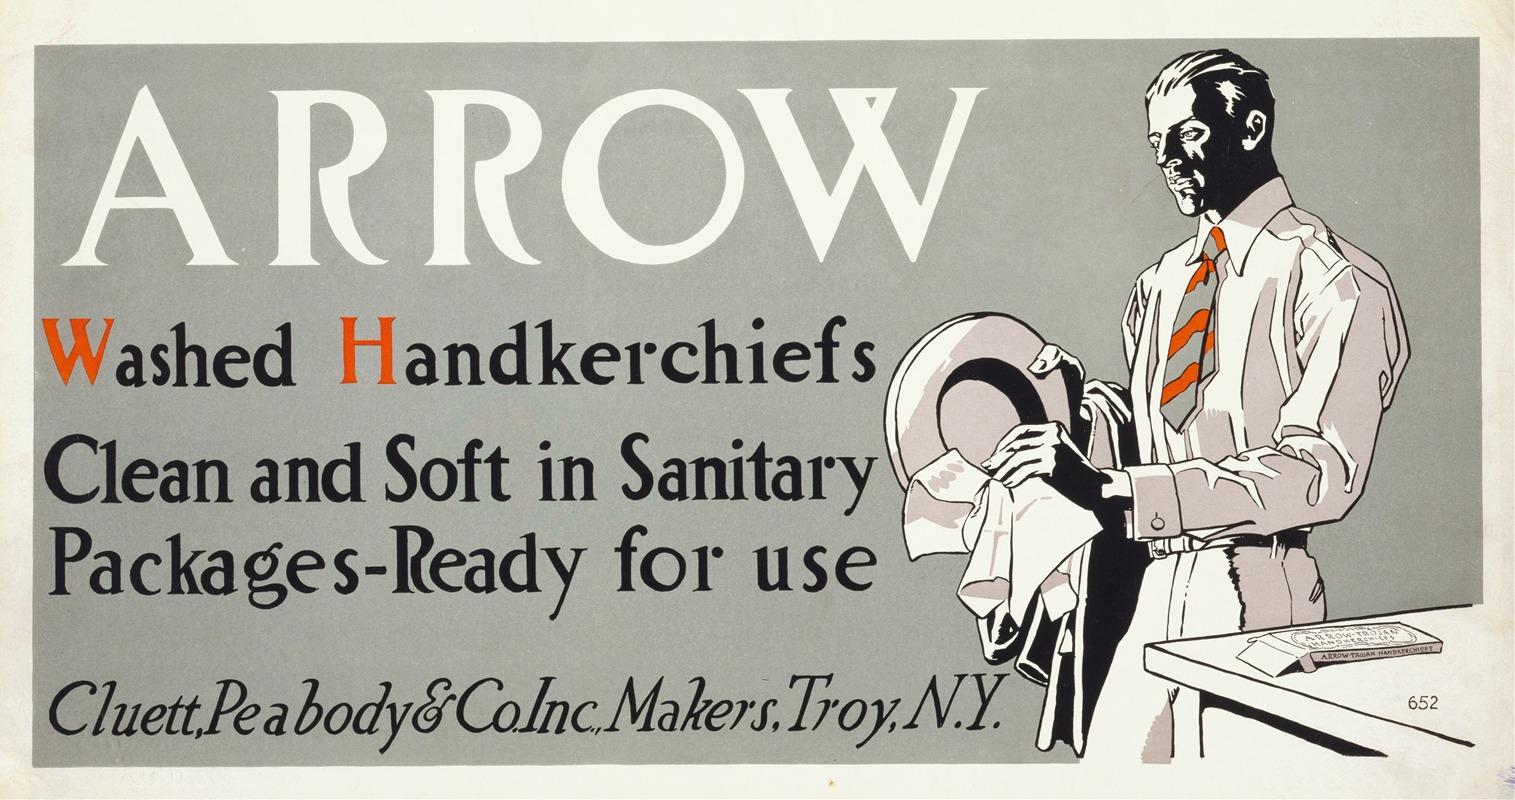 Edward Penfield - Arrow washed handkerchiefs